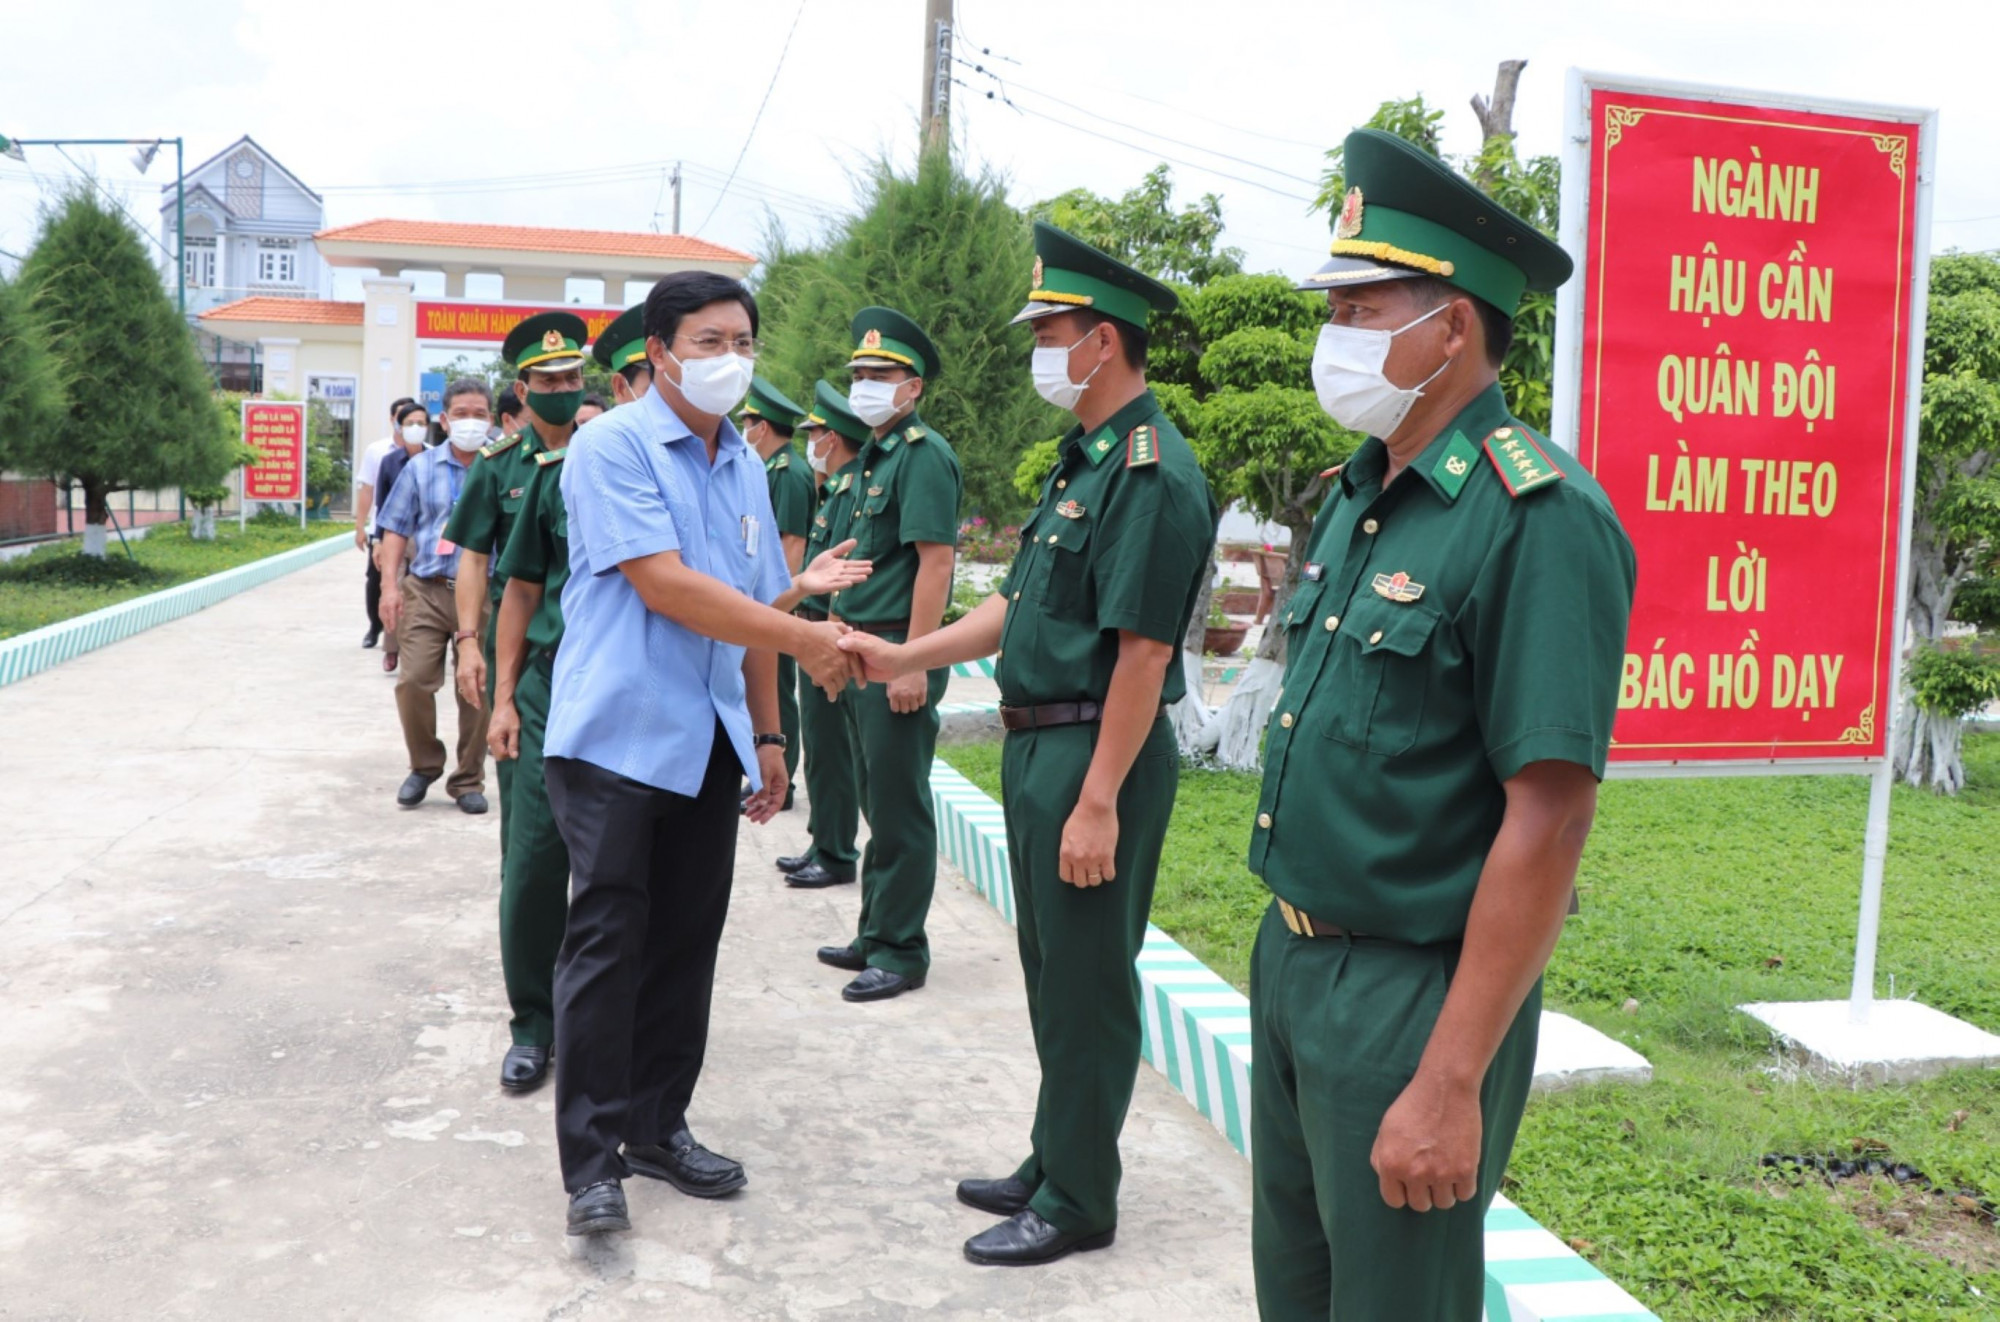 Bí thư Tỉnh ủy Cà Mau Nguyễn Tiến Hải kiểm tra công tác phòng, chống dịch tại Đồn Biên phòng Sông Đốc